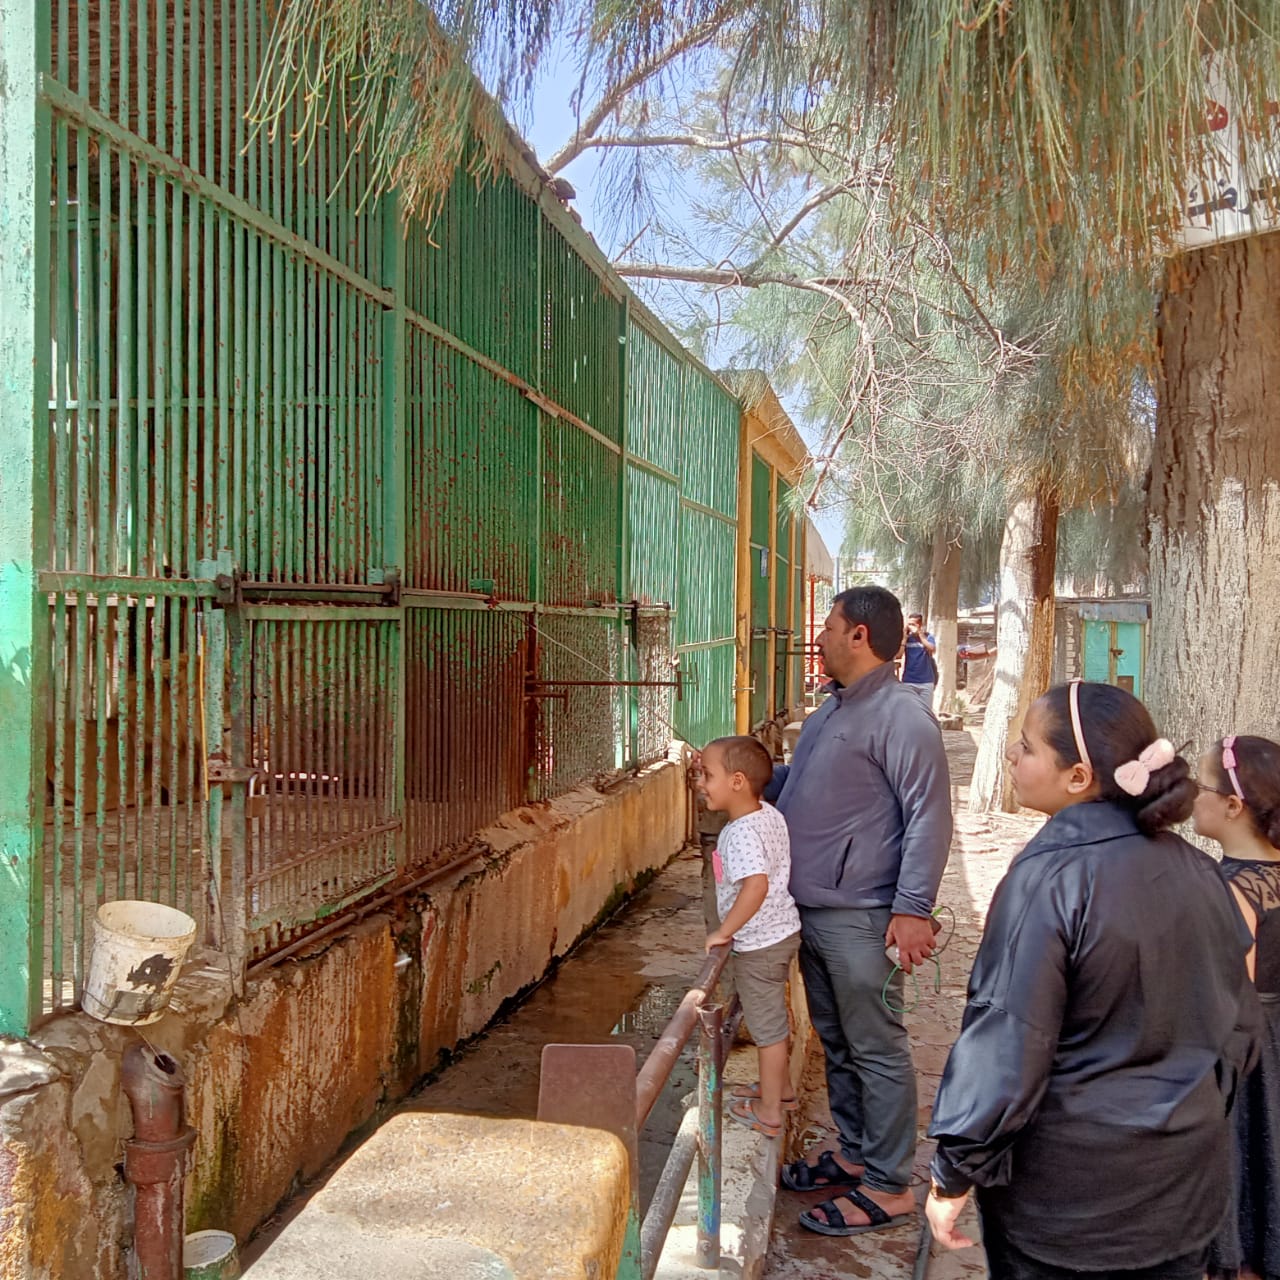 ملك الغابة حبيب الأطفال الأسد مولع الدنيا فى حديقة الحيوان فى كفر الشيخ